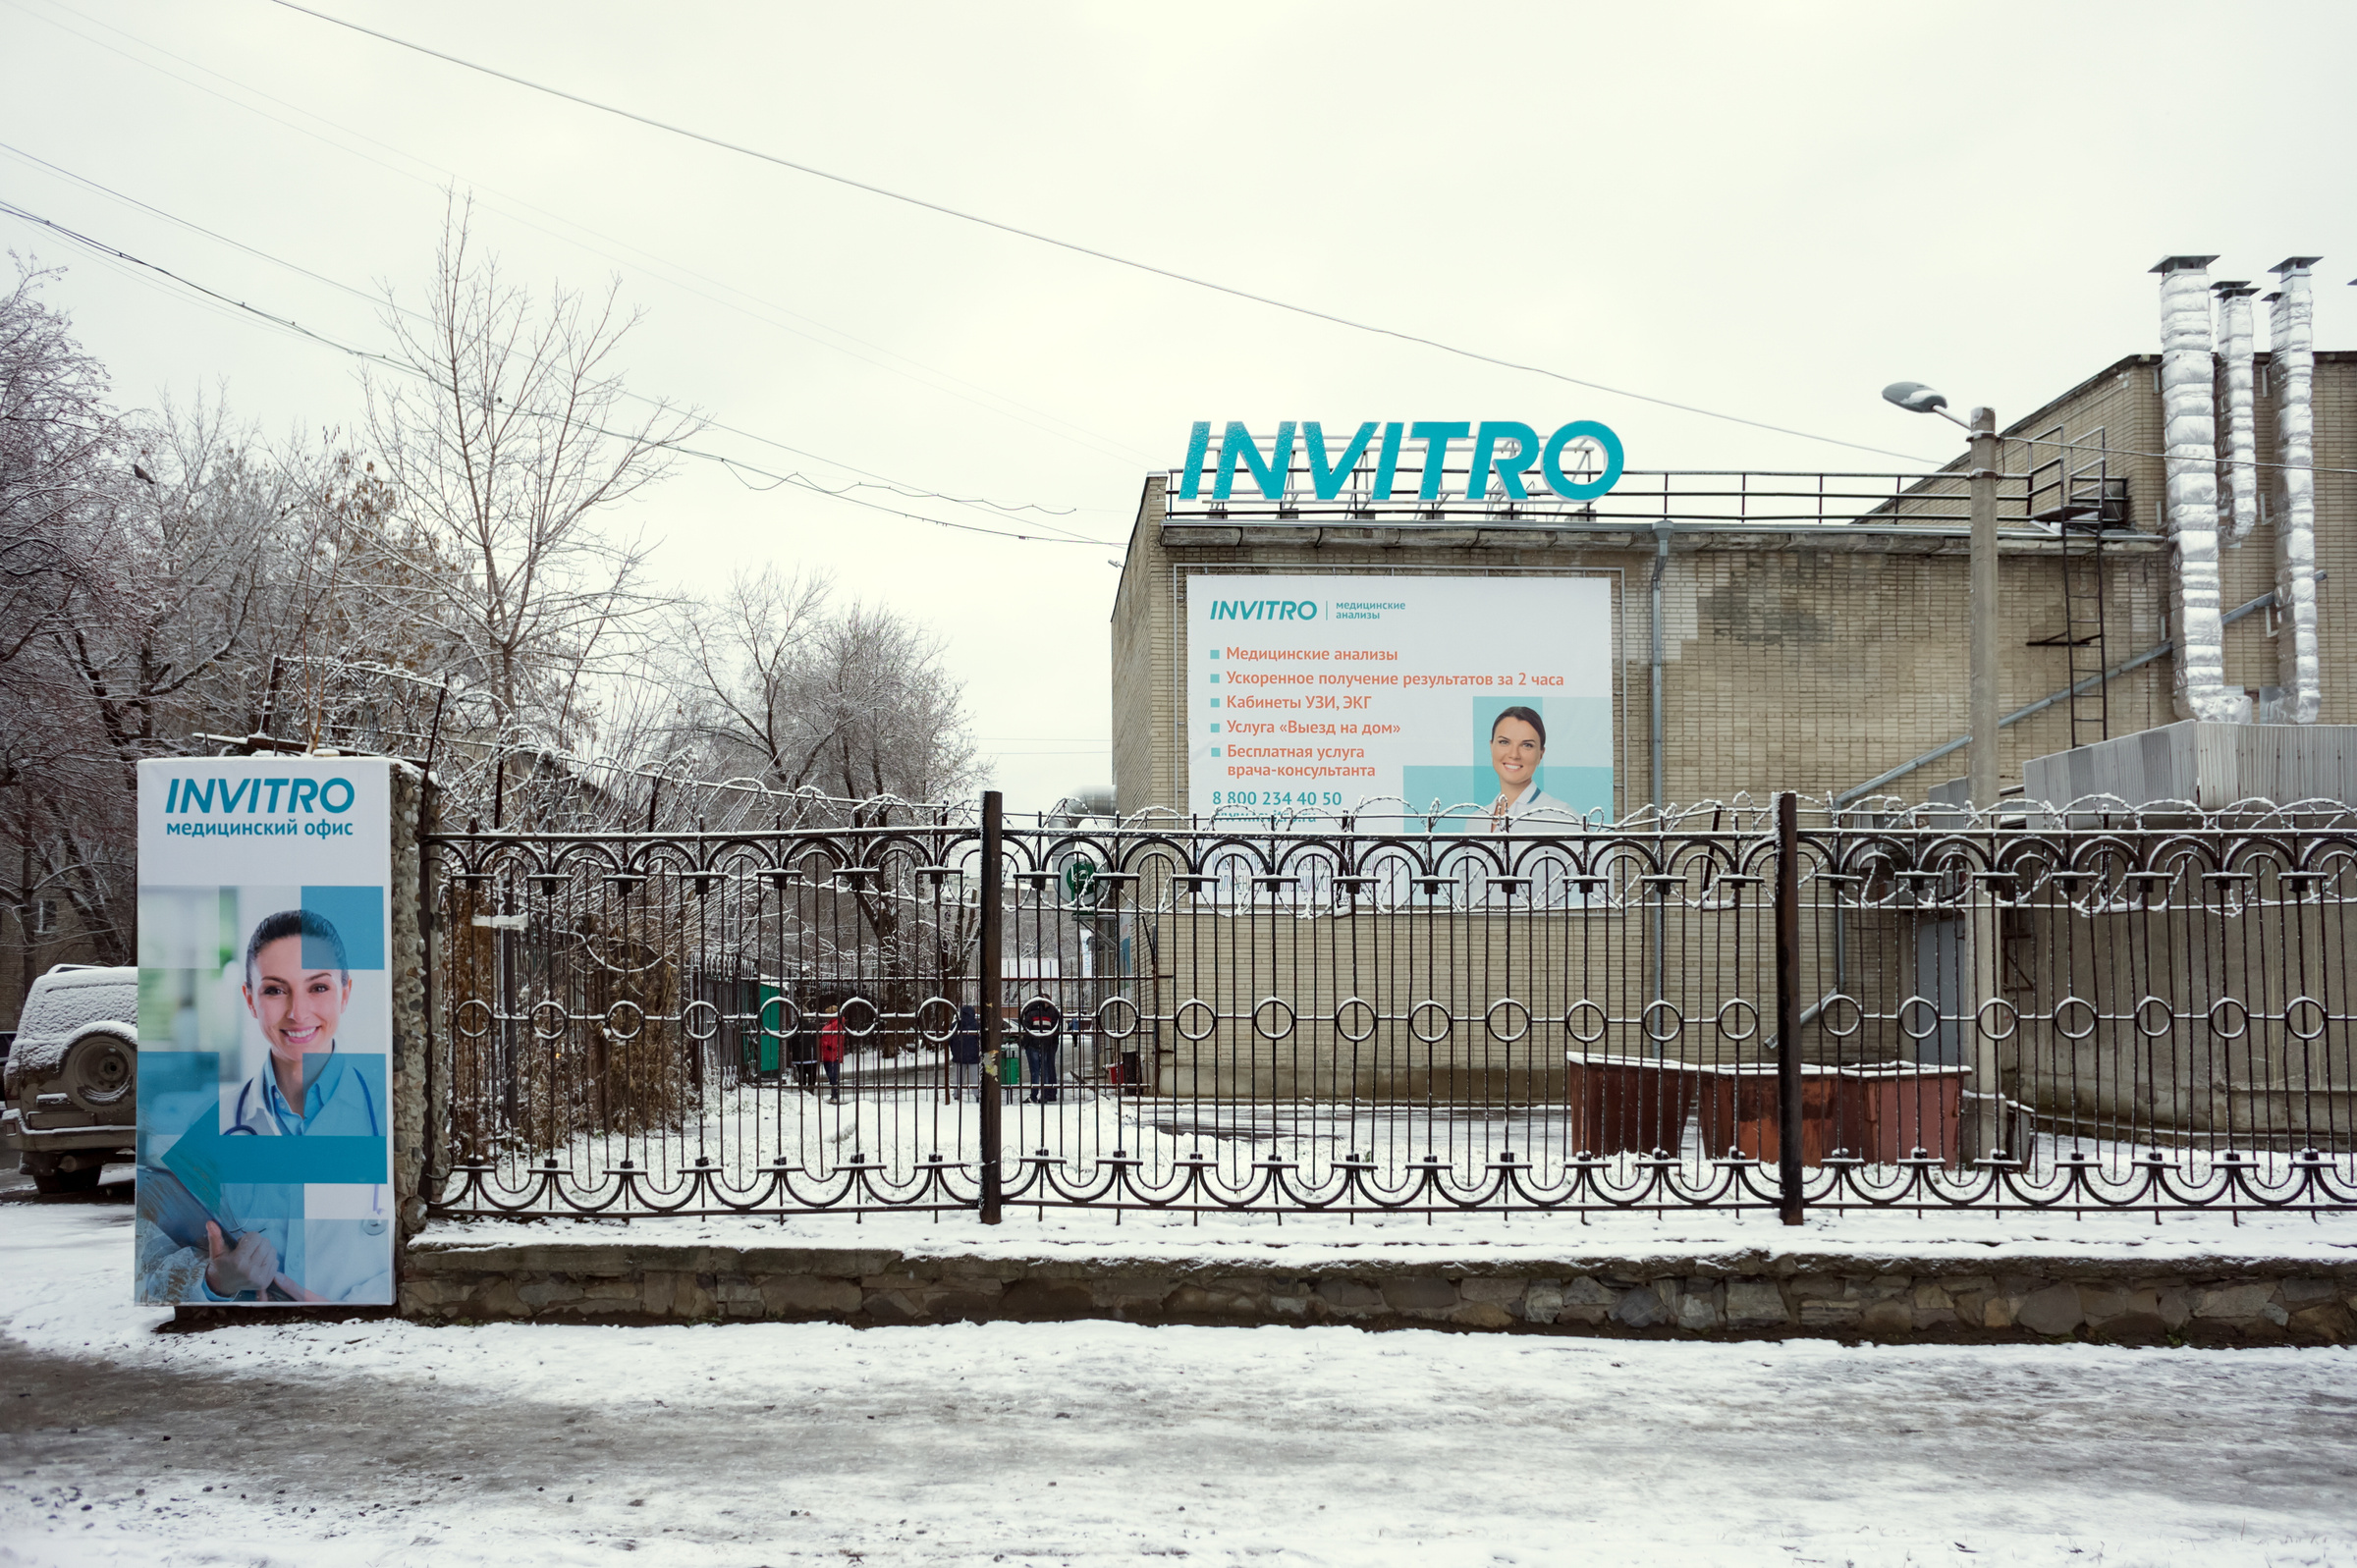 Лаборатории "Инвитро" встречаются на каждом шагу в Москве. Фото © Shutterstock